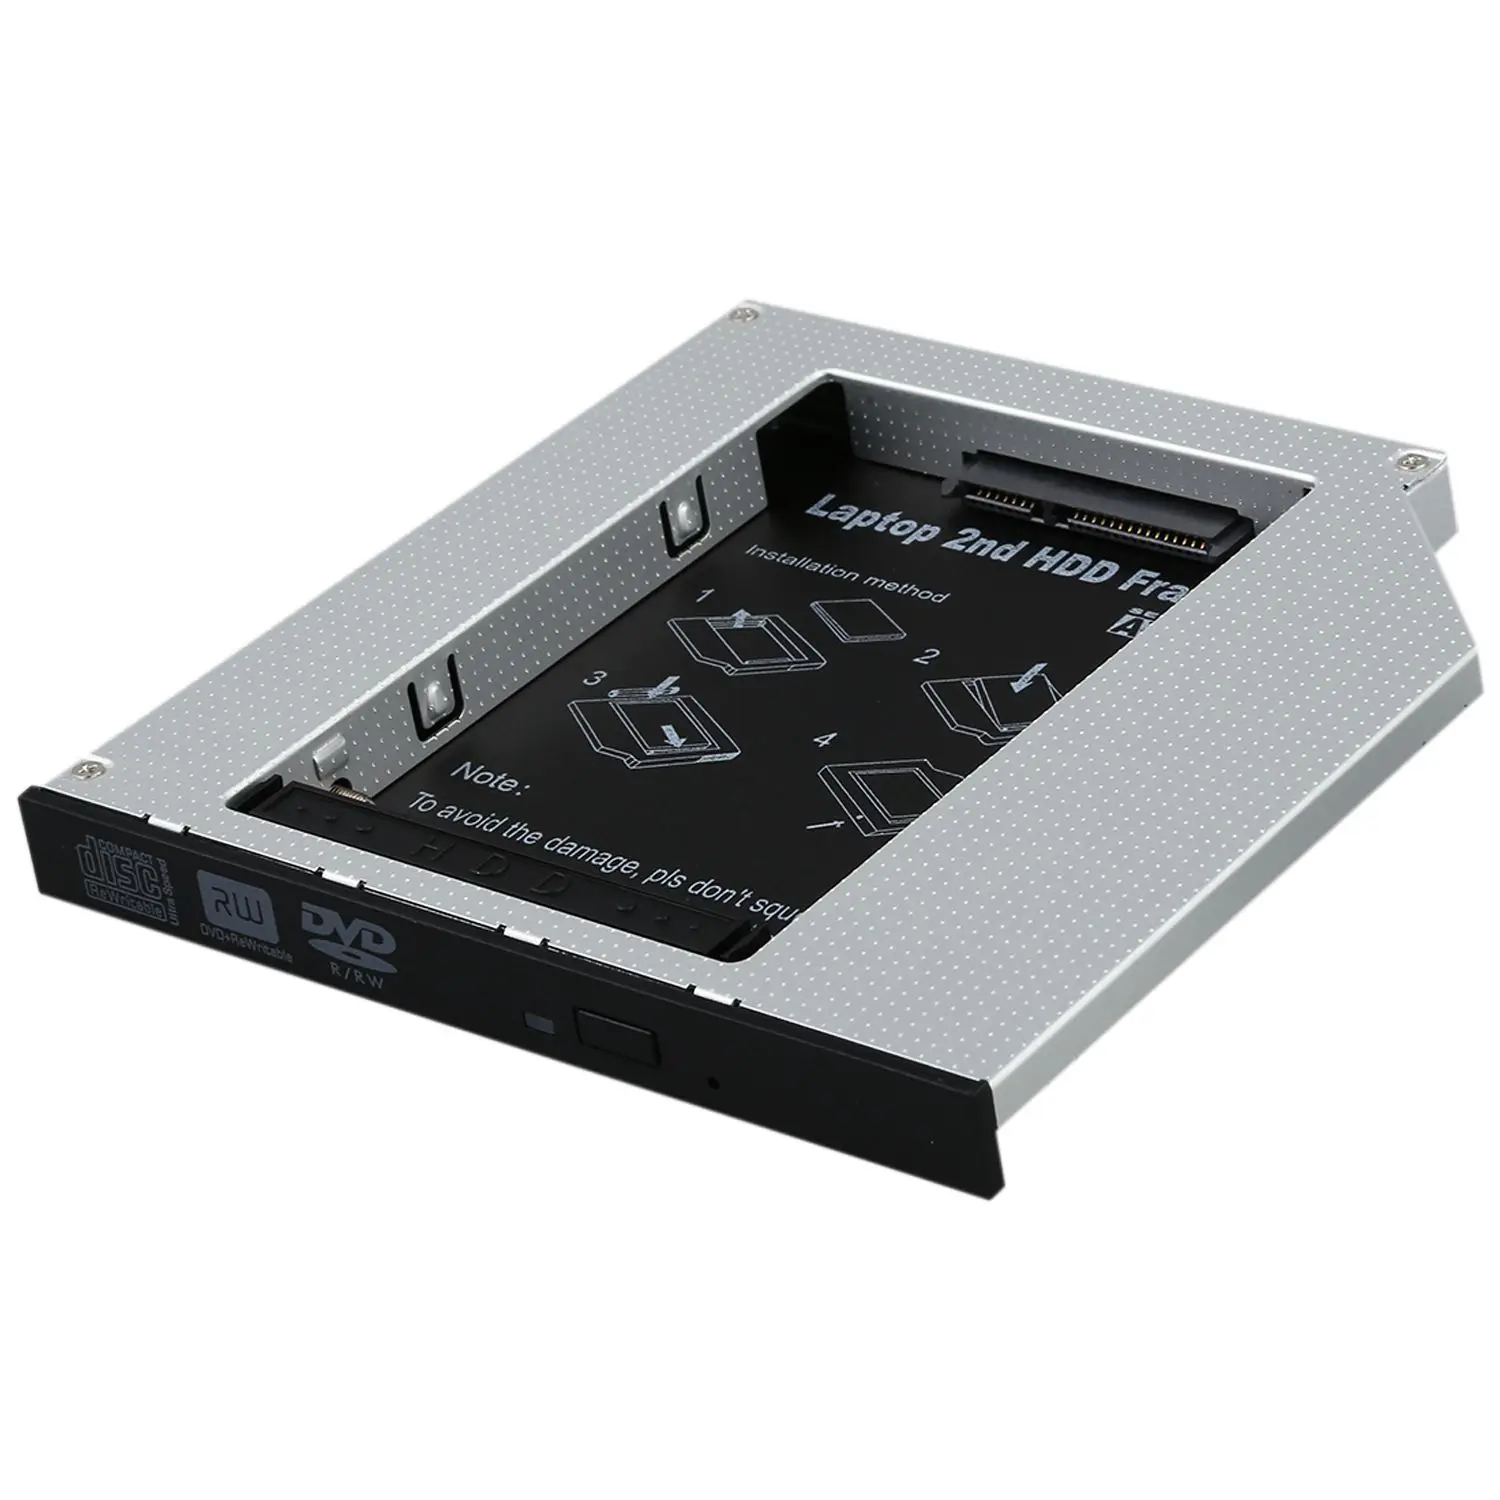 SATA Оптический Bay 2nd жесткий диск Caddy, универсальный для 9,5 мм слот CD/DVD привод (для SSD и HDD)